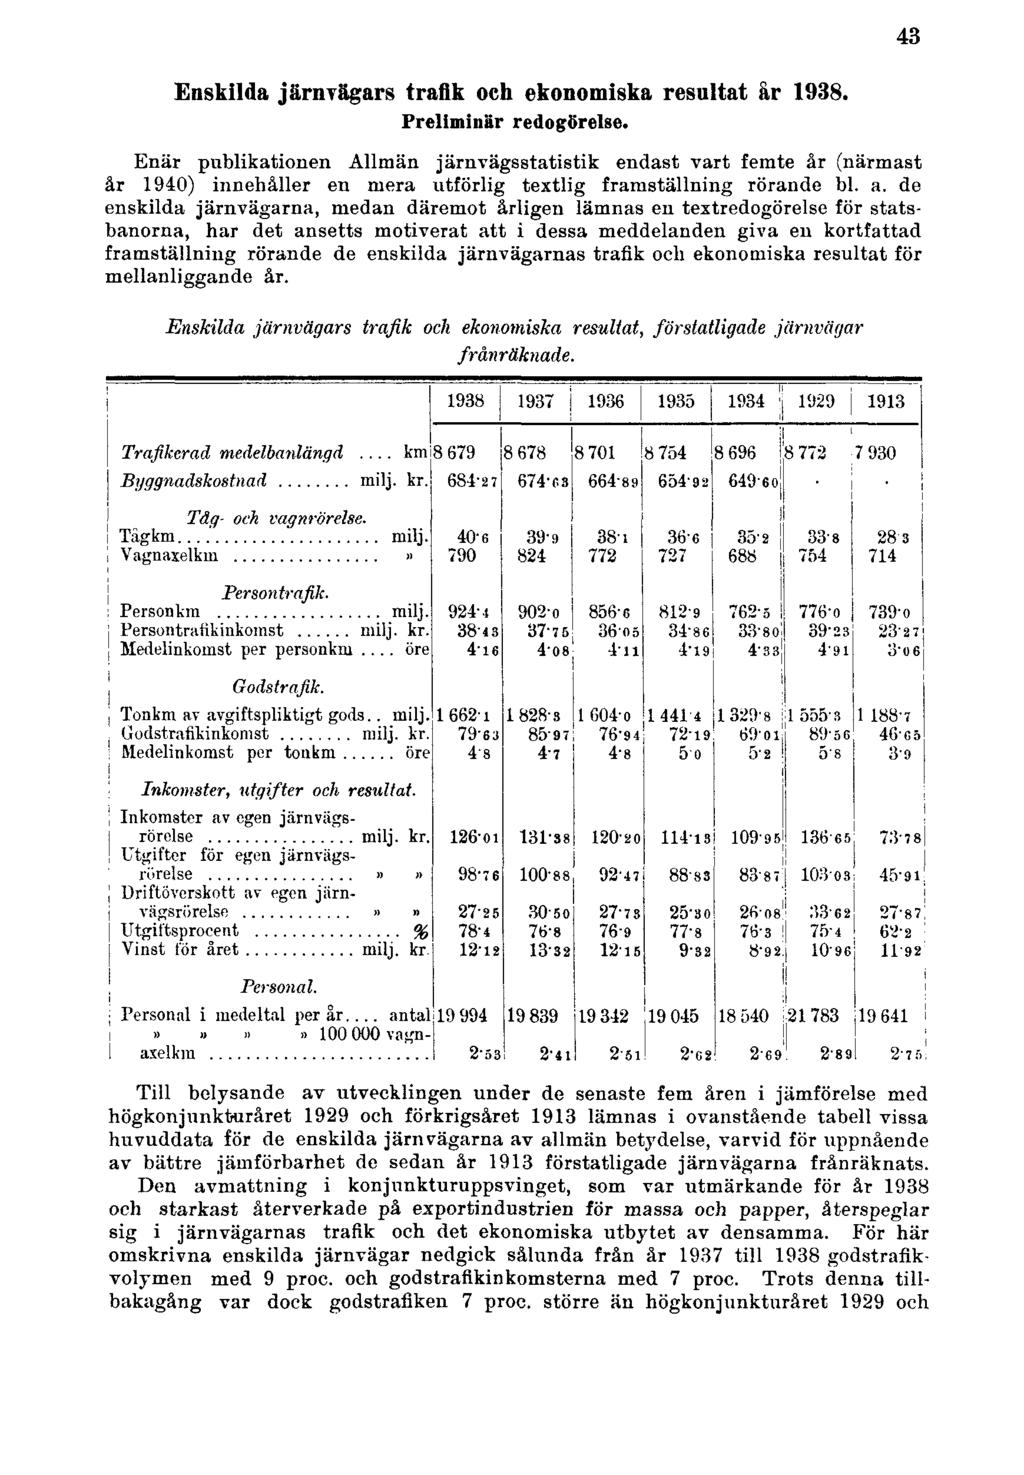 Enskilda järnvägars trafik och ekonomiska resultat år 1938. Preliminär redogörelse.